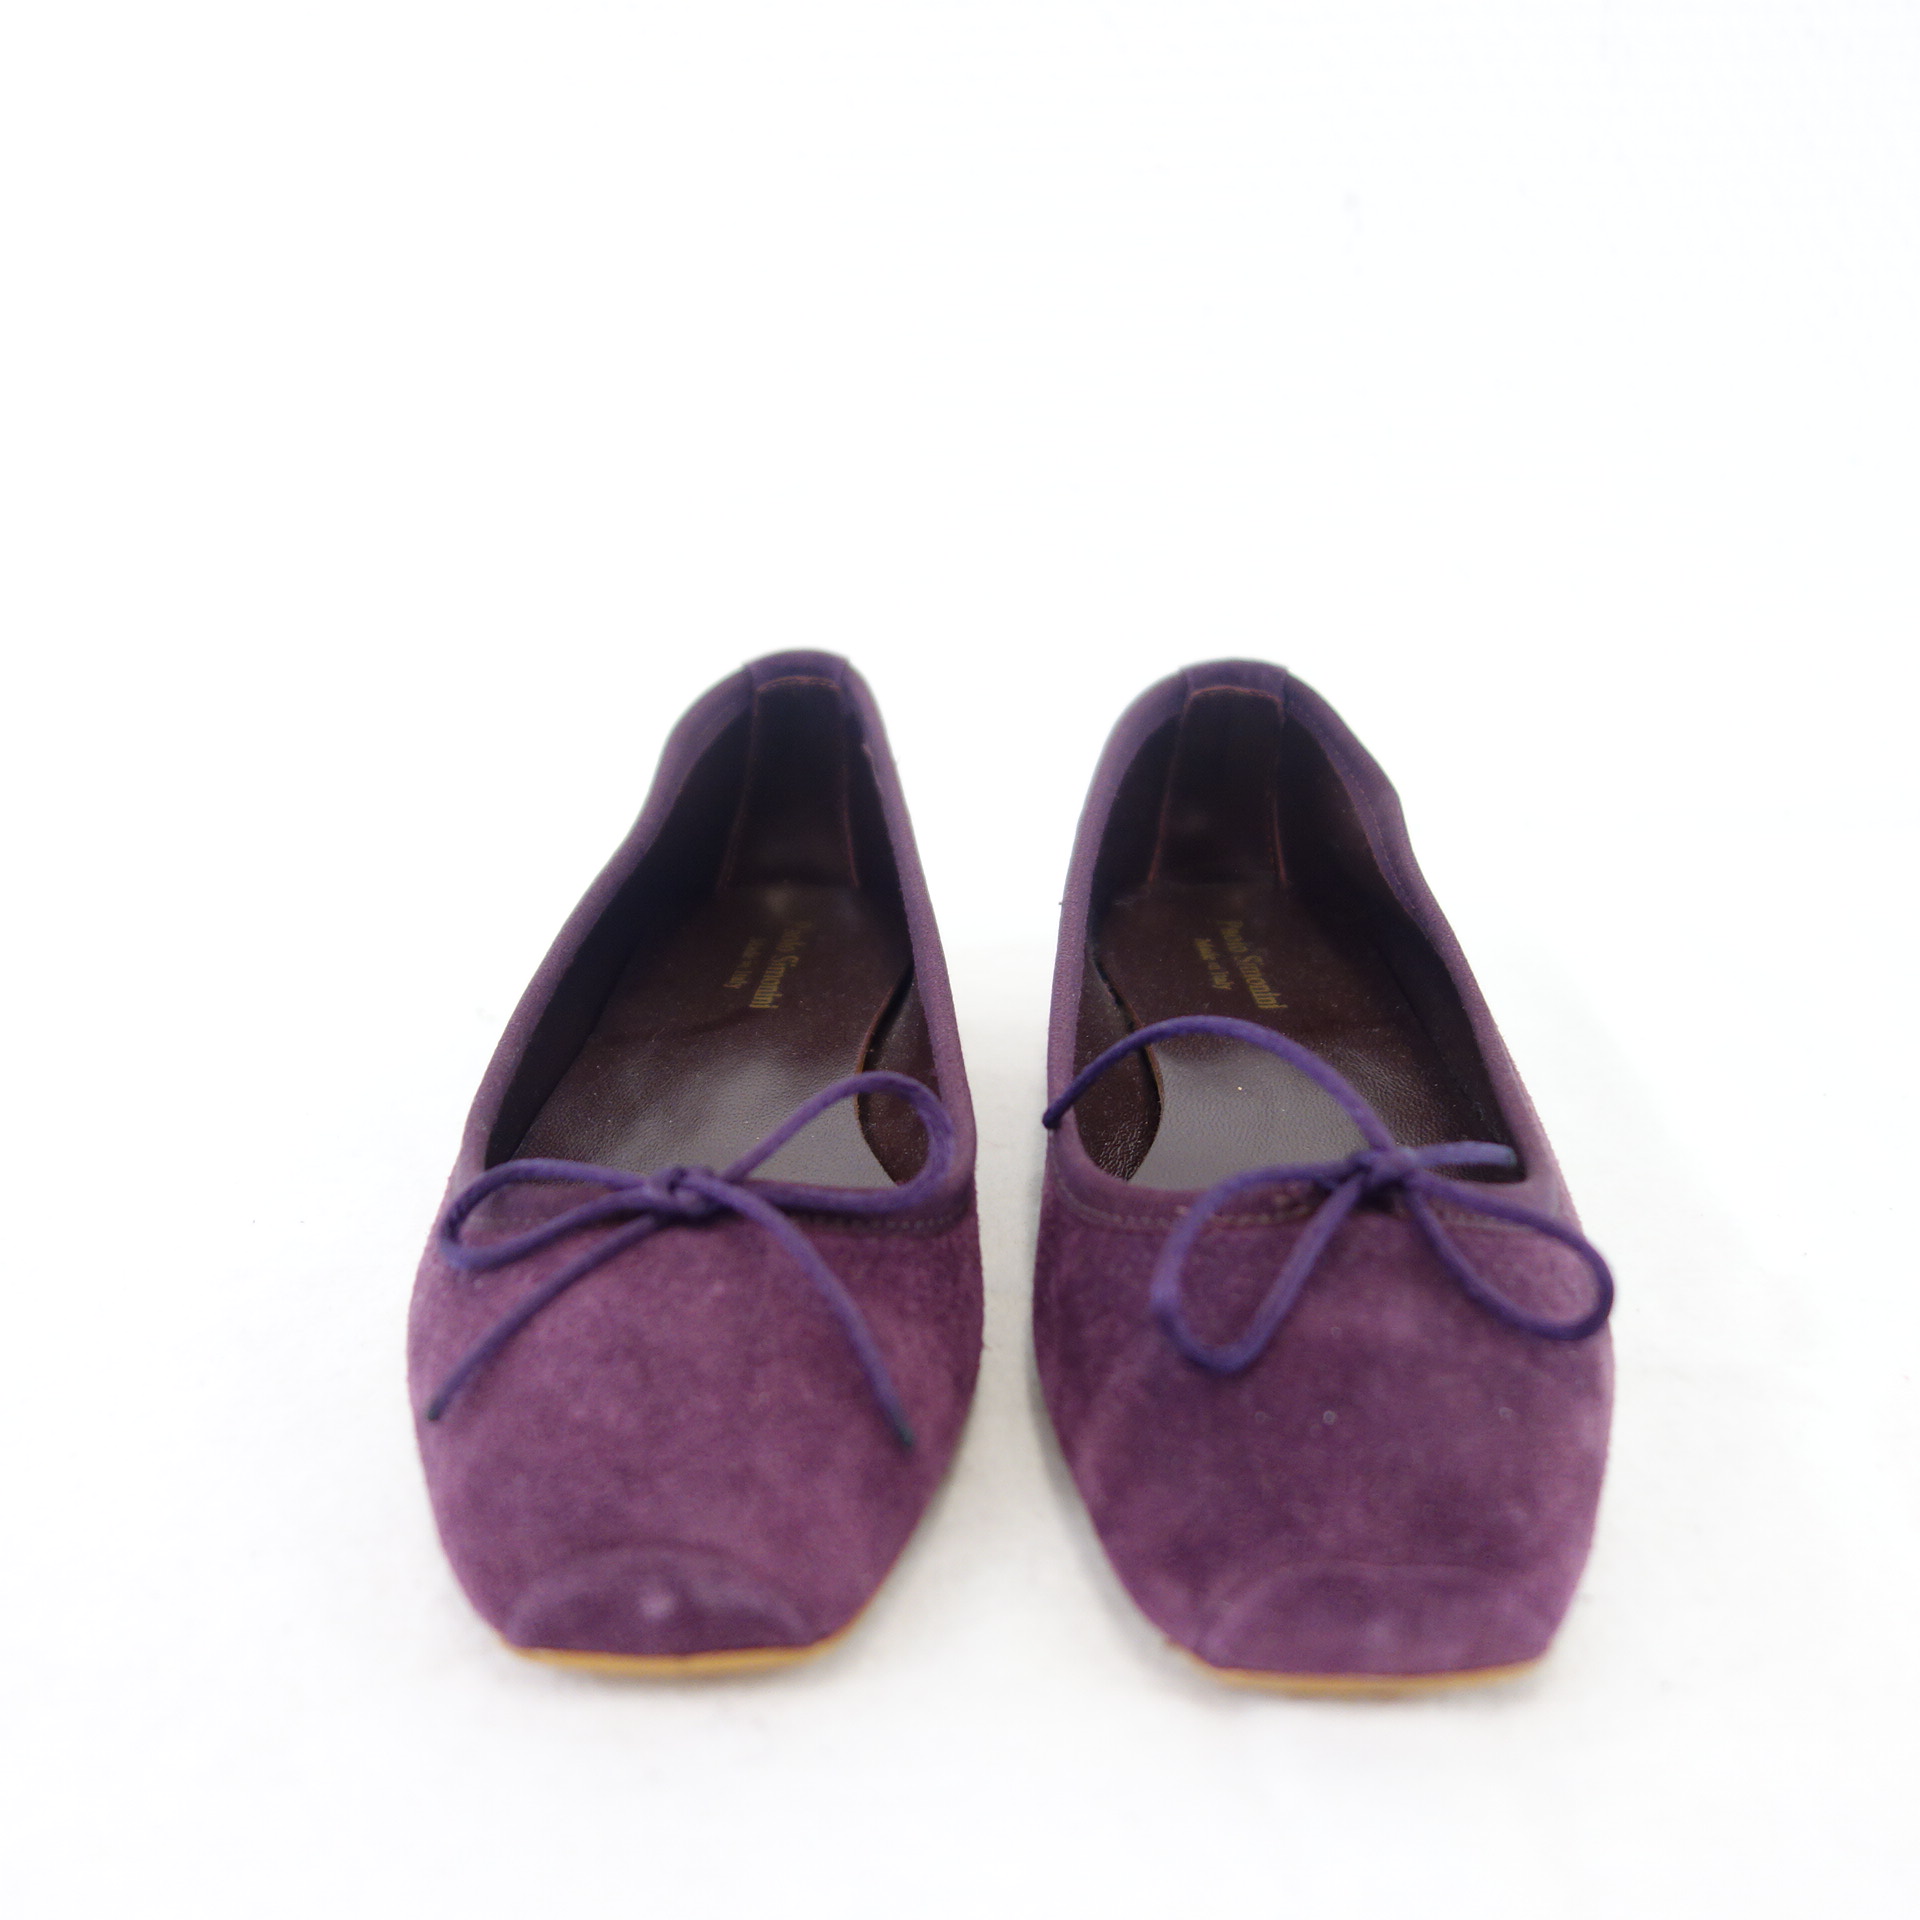 PAOLO SIMONINI Damen Schuhe Ballerinas Loafer Slipper Wildleder Violett Lila Gr 36